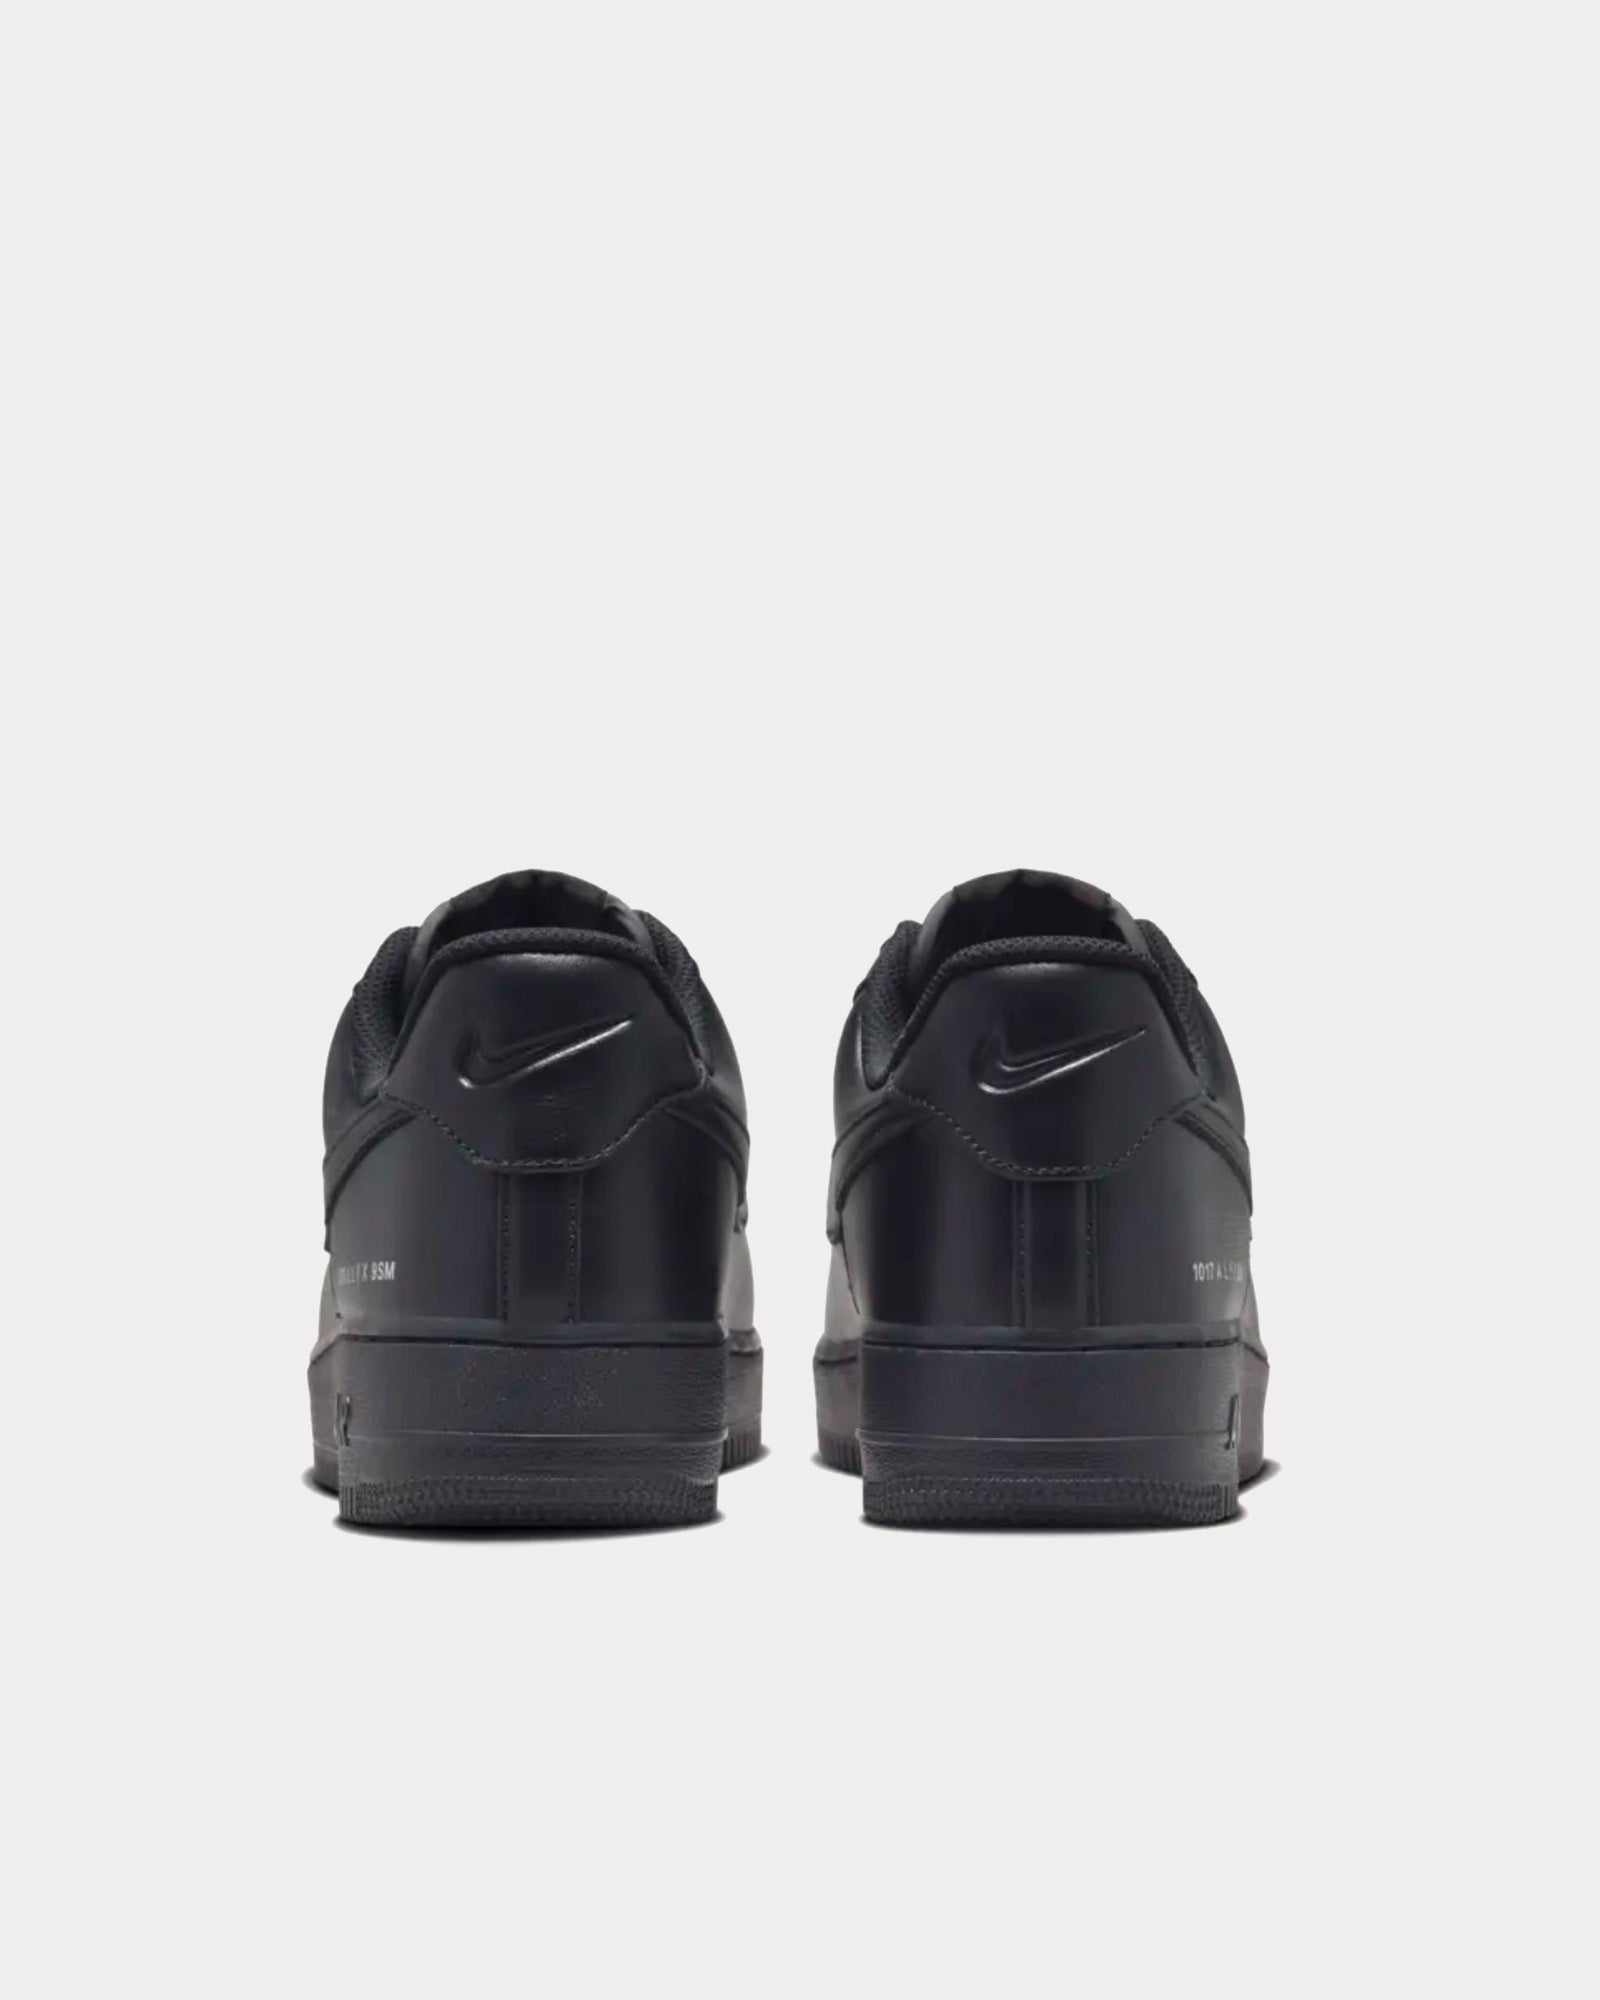 Nike x ALYX - AF-1 Low Black Low Top Sneakers